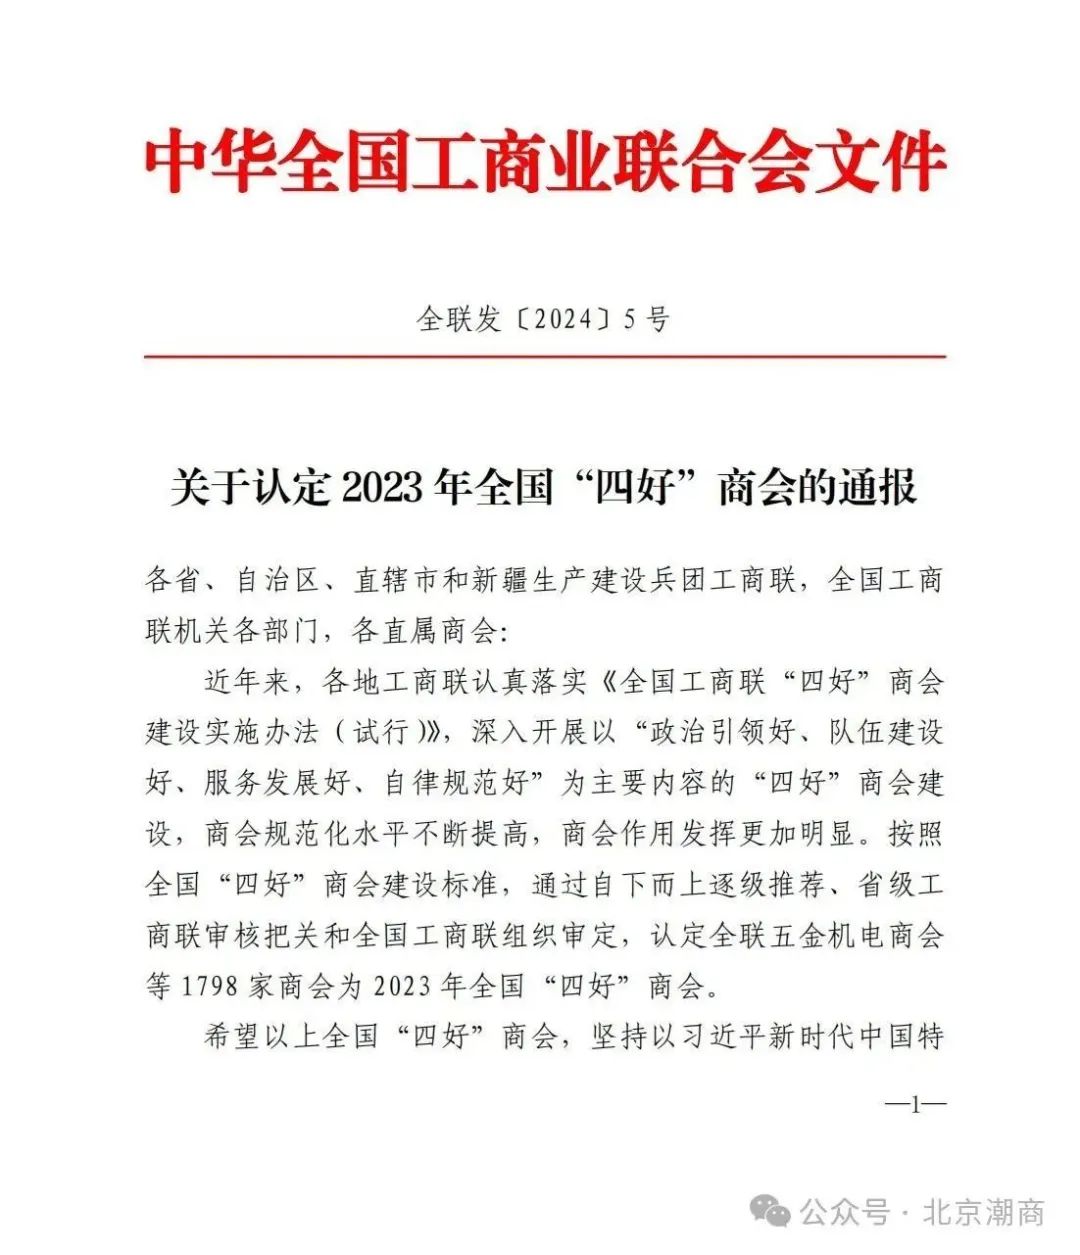 北京潮商会被认定为2023 年全国 “四好”商会